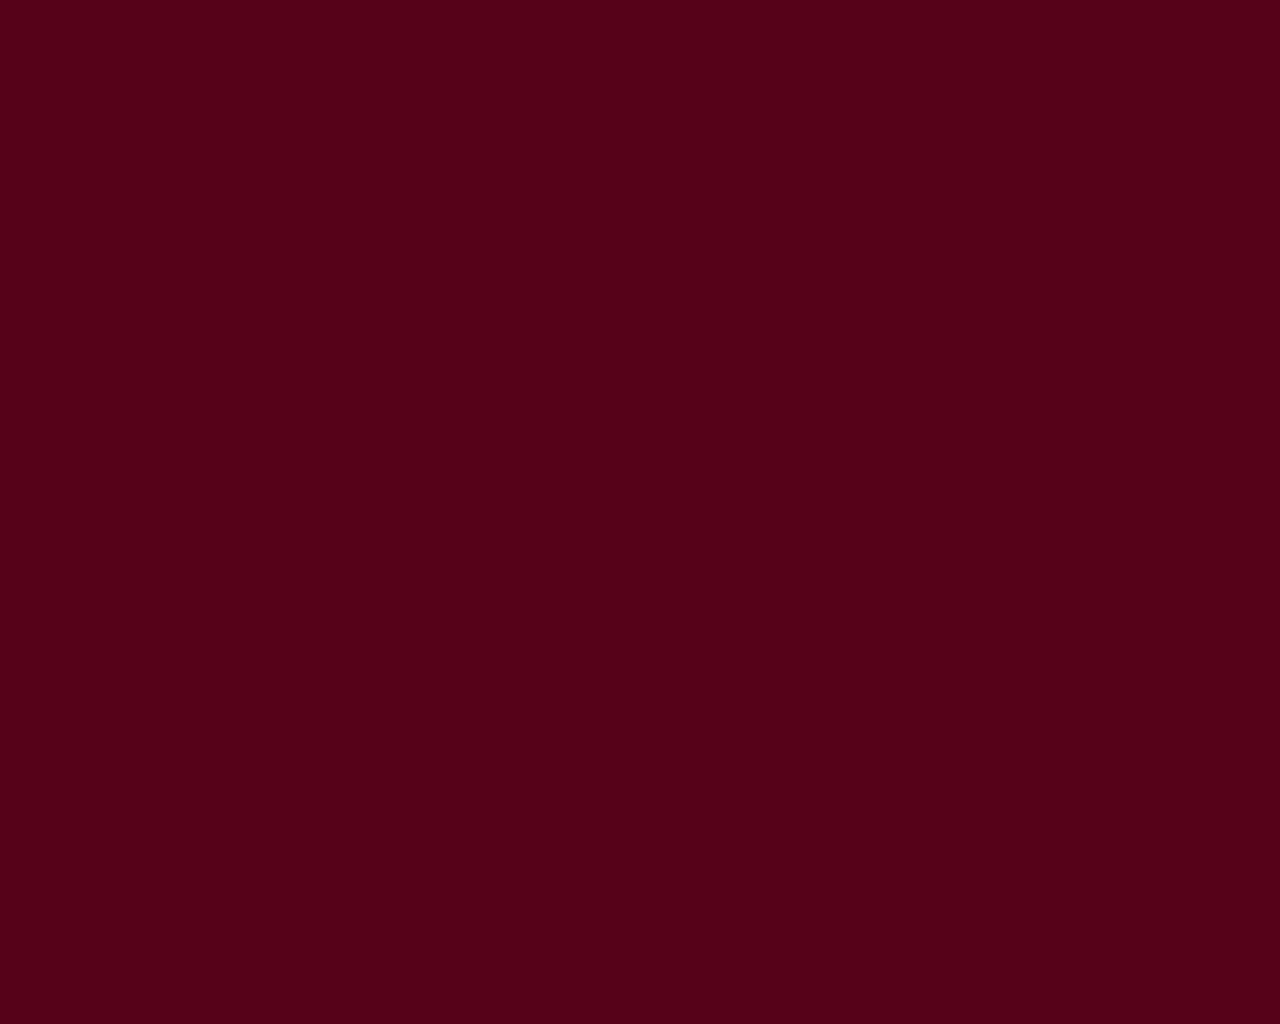 1280x1024 Dark Scarlet Solid Color Background